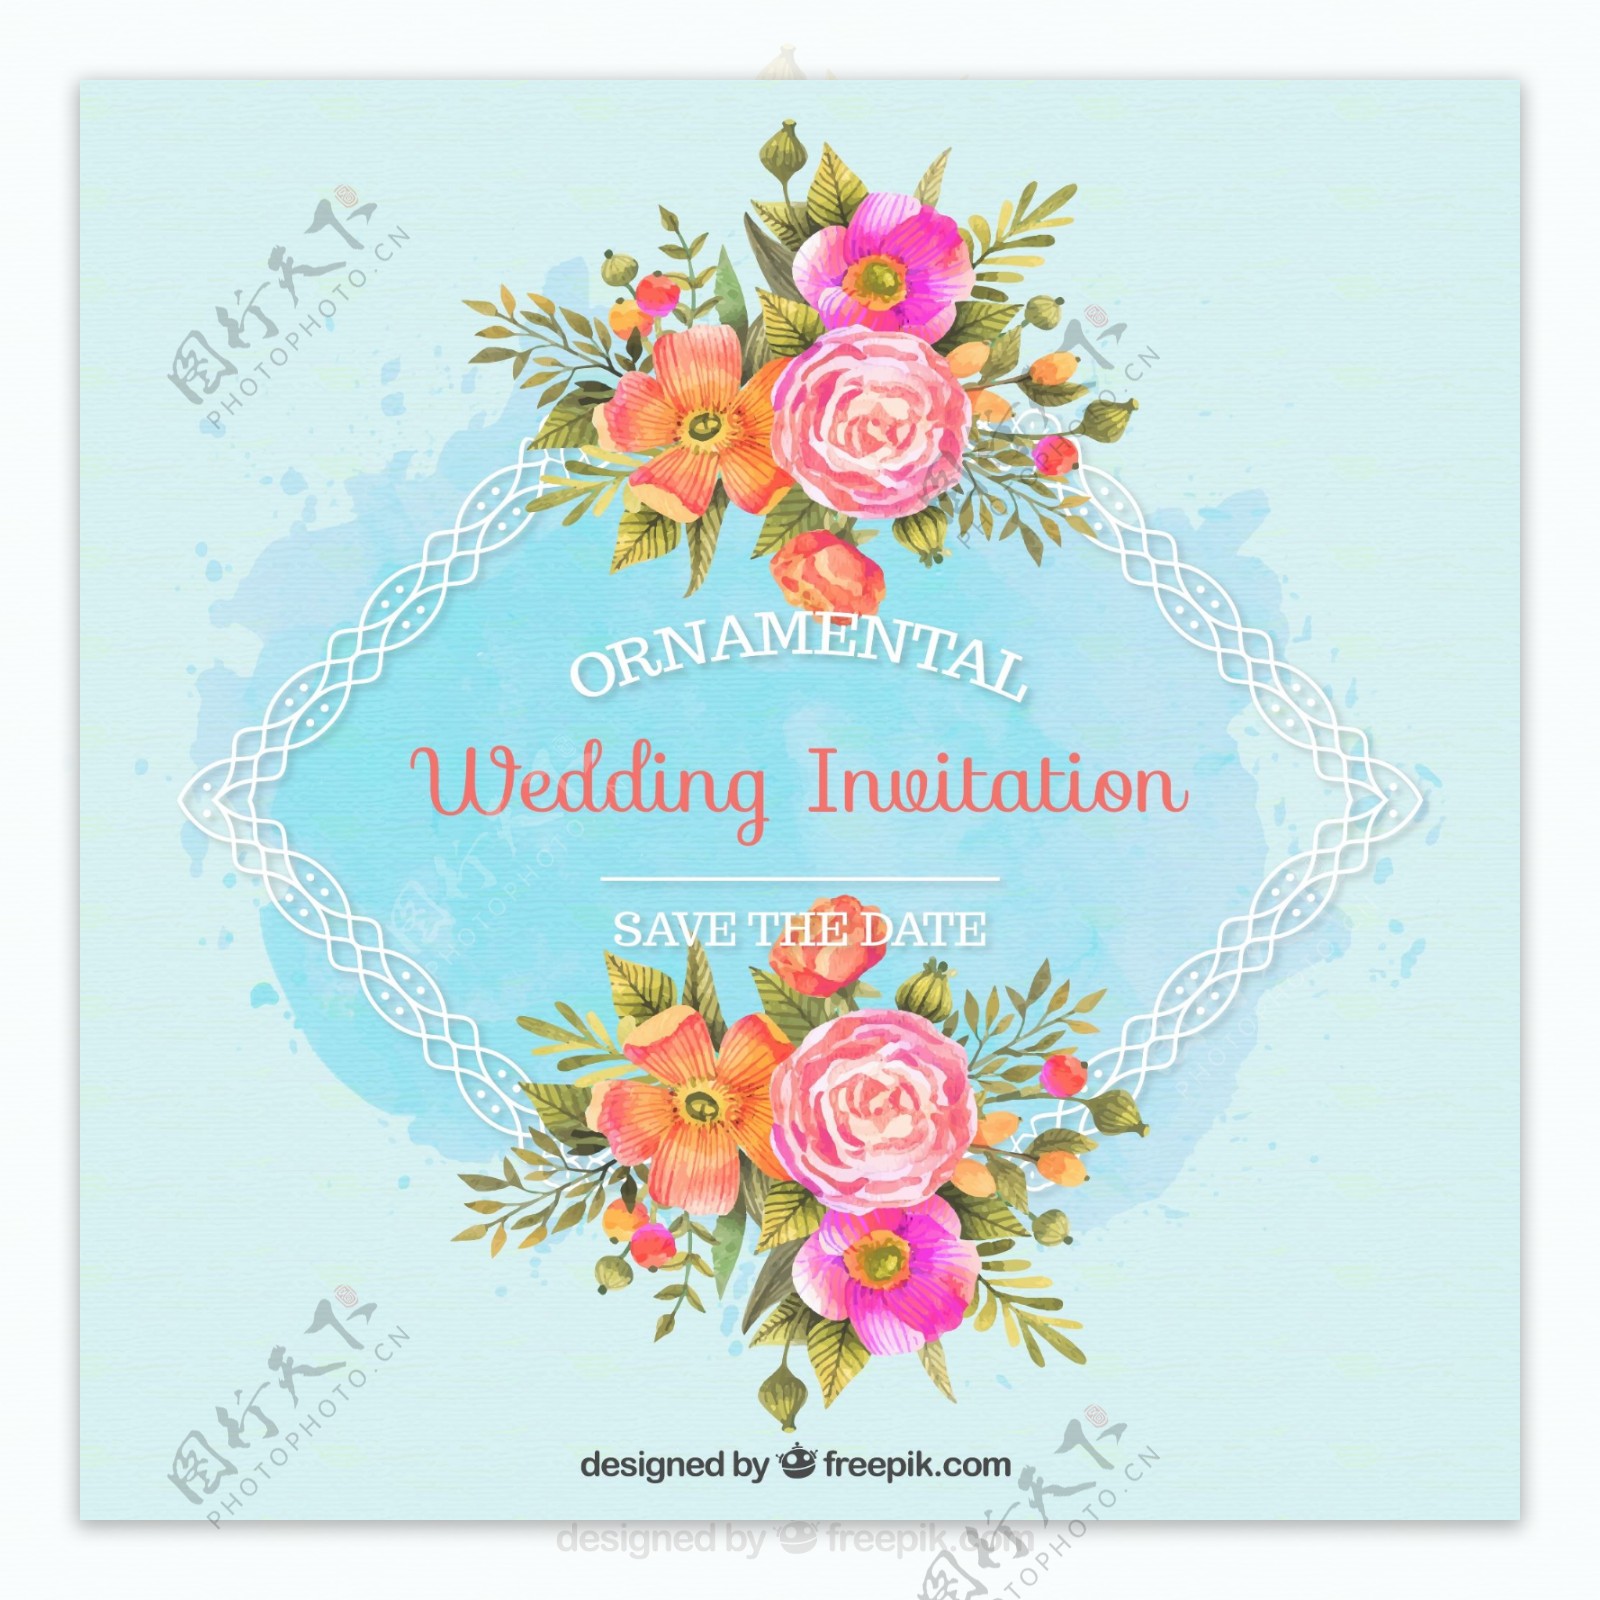 婚礼邀请与观赏性框架和水彩花卉